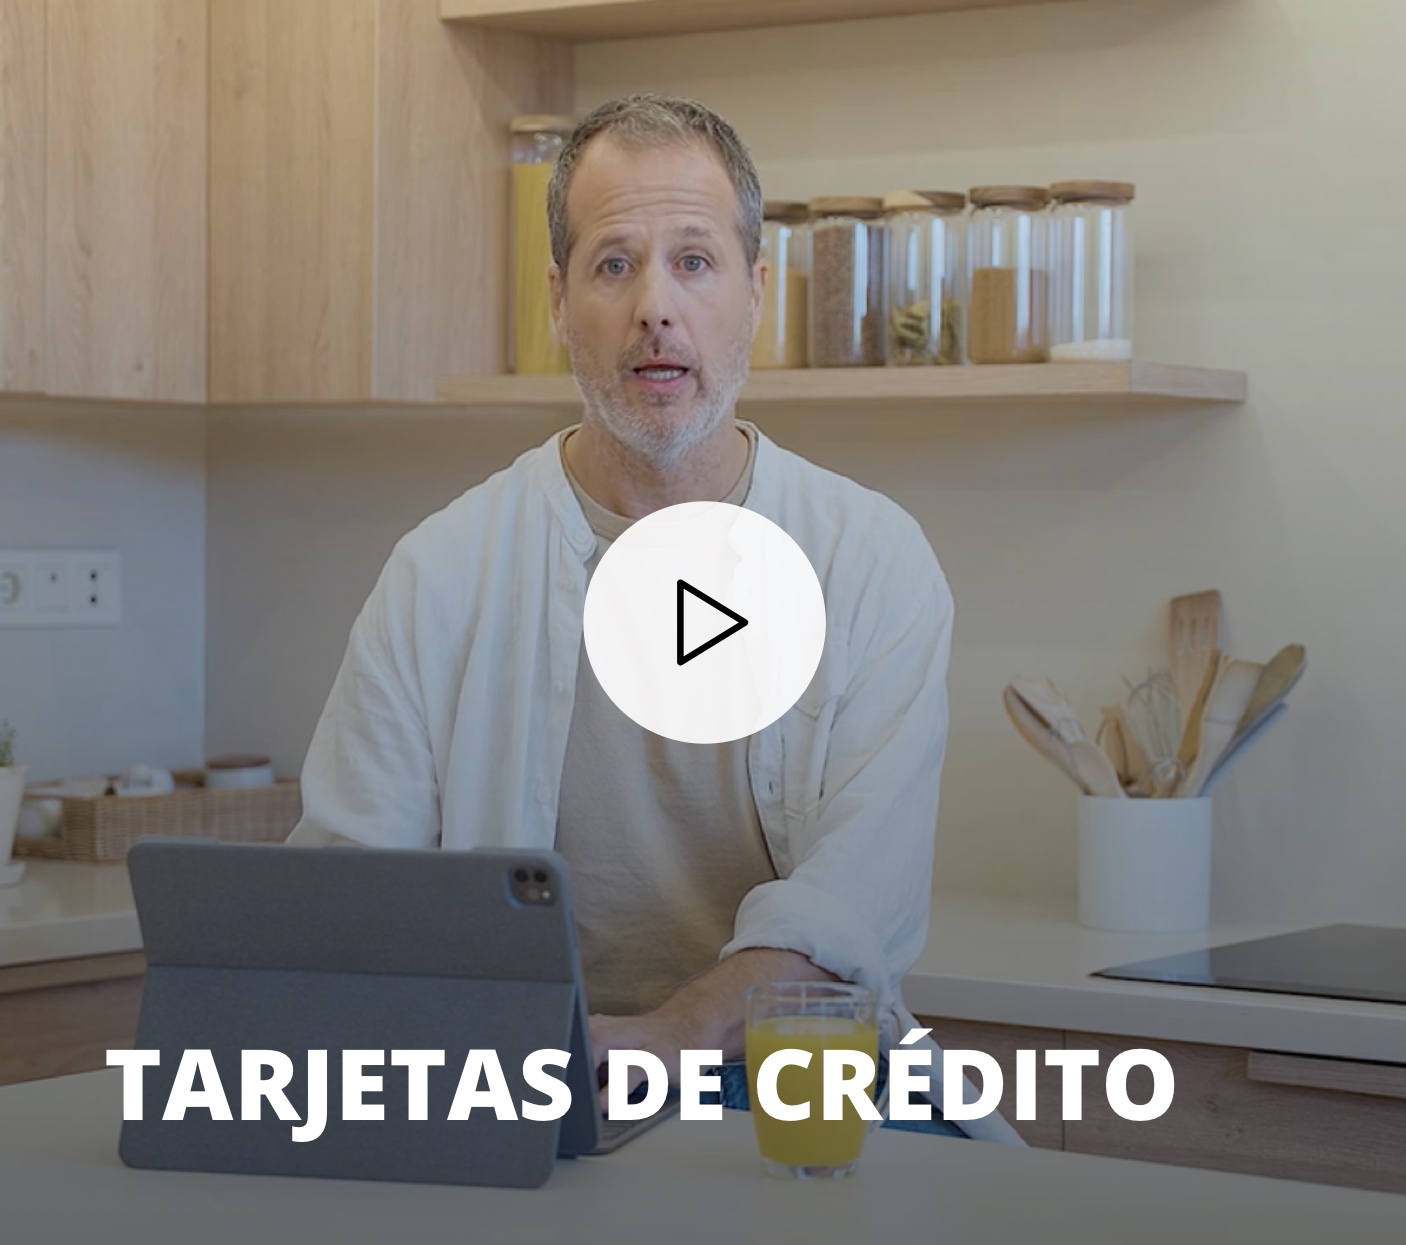 Vídeo de Tarjetas de crédito